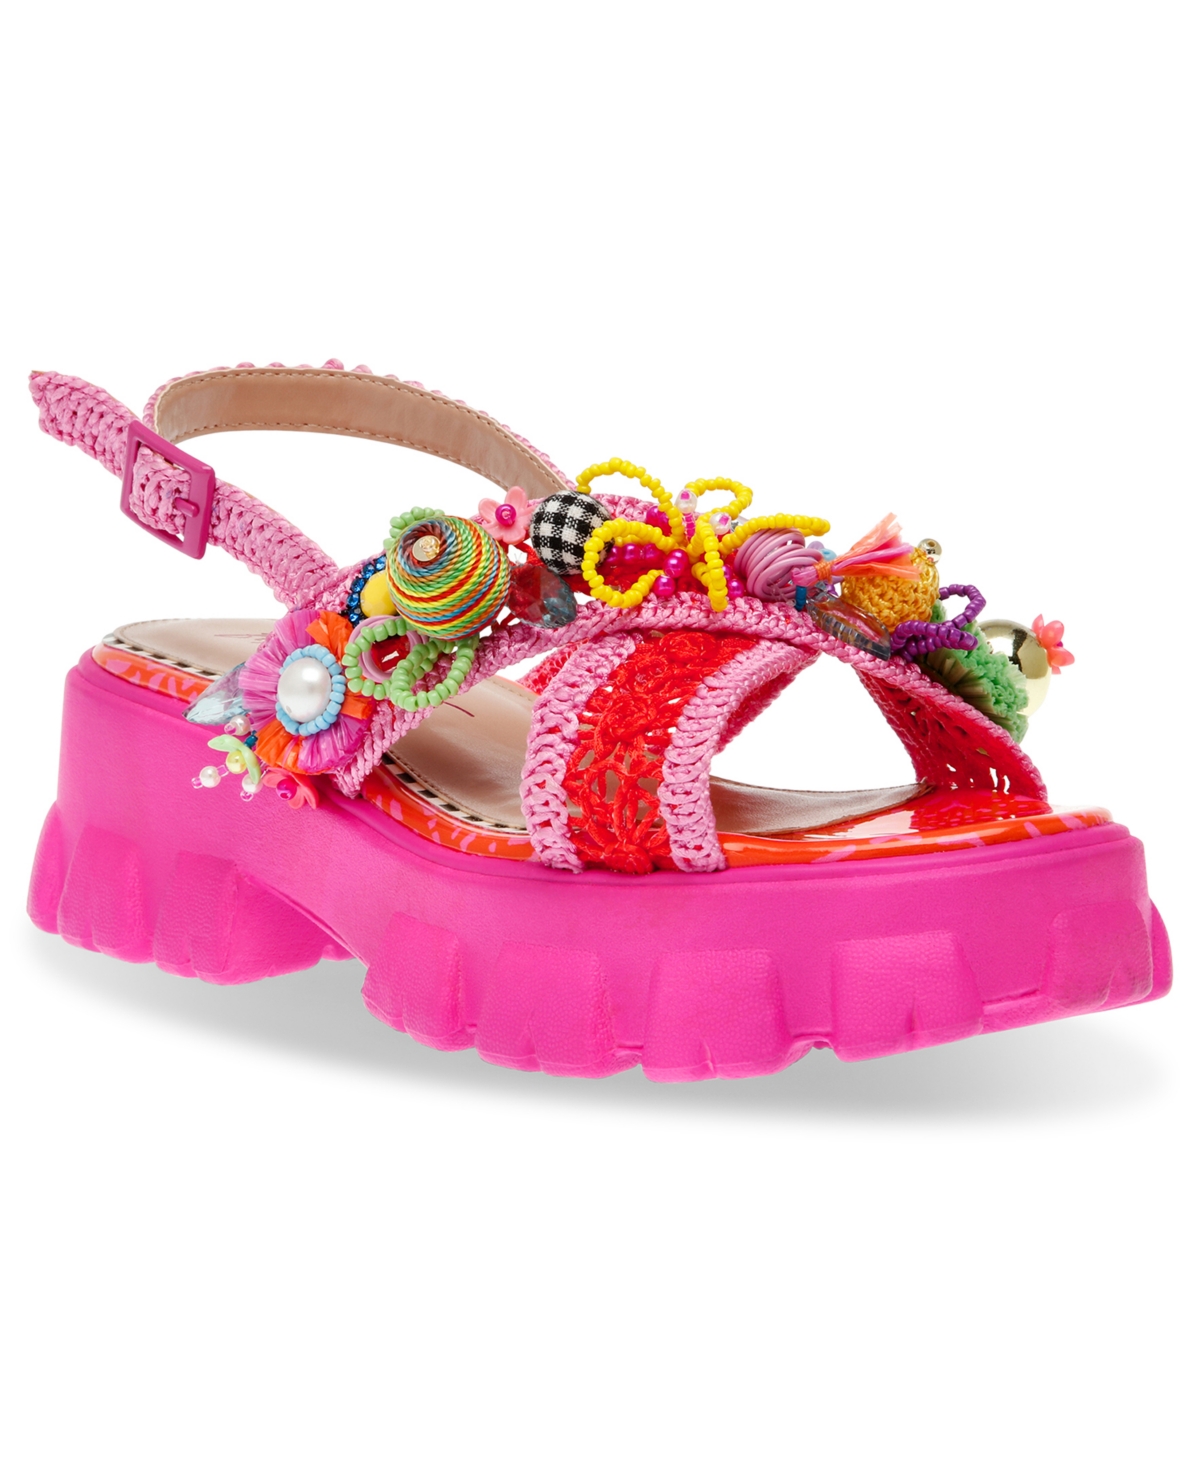 Women's Graysen Embellished Platform Lug-Sole Sandals - Pink Multi